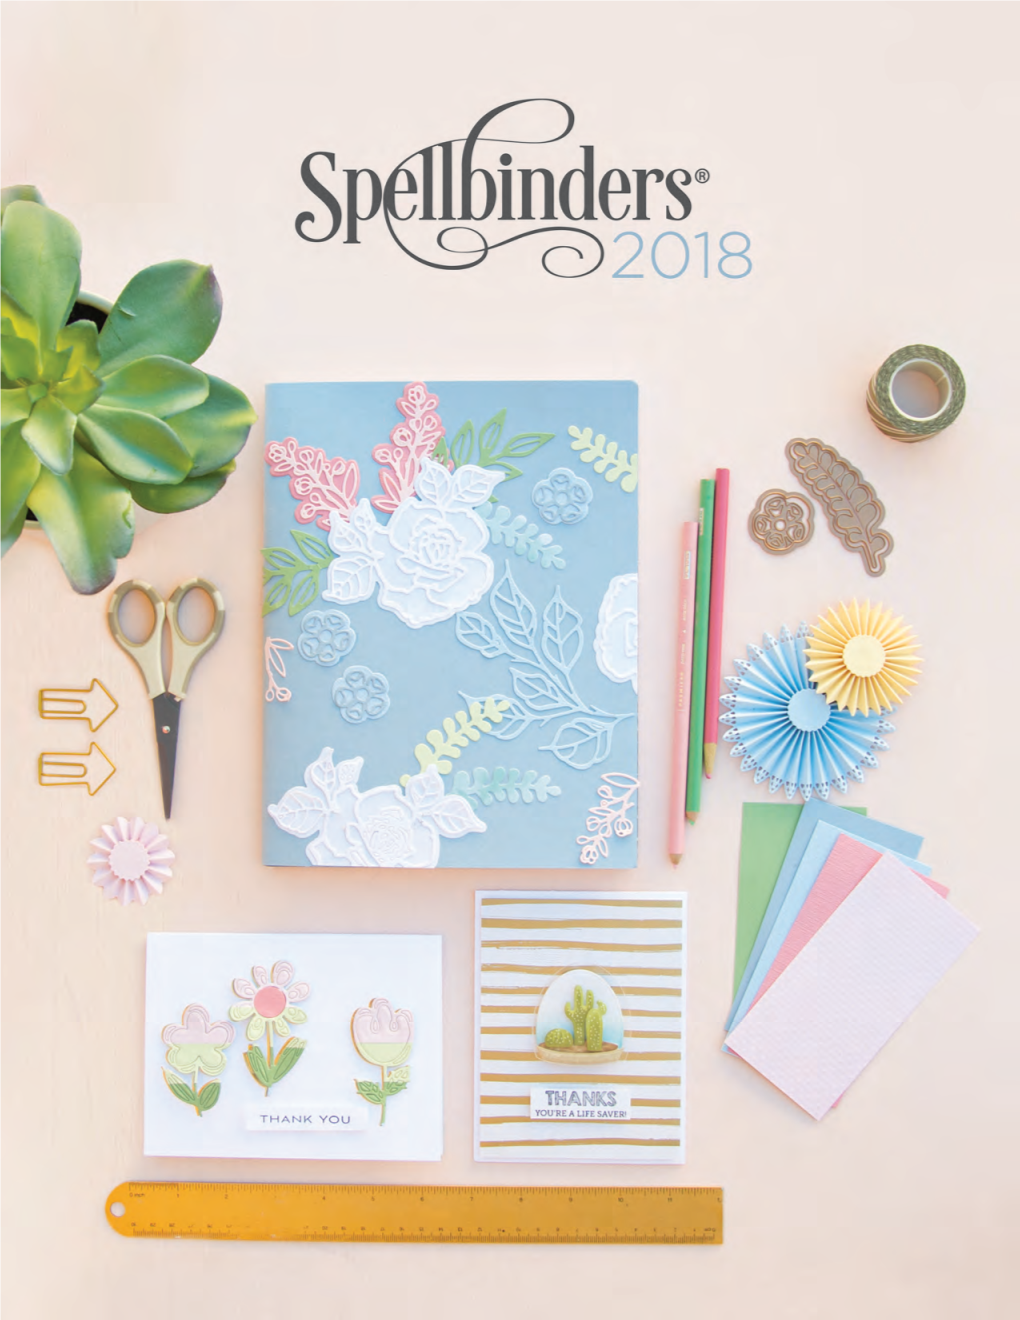 2018 Spellbinders Paper Arts Company, L.L.C